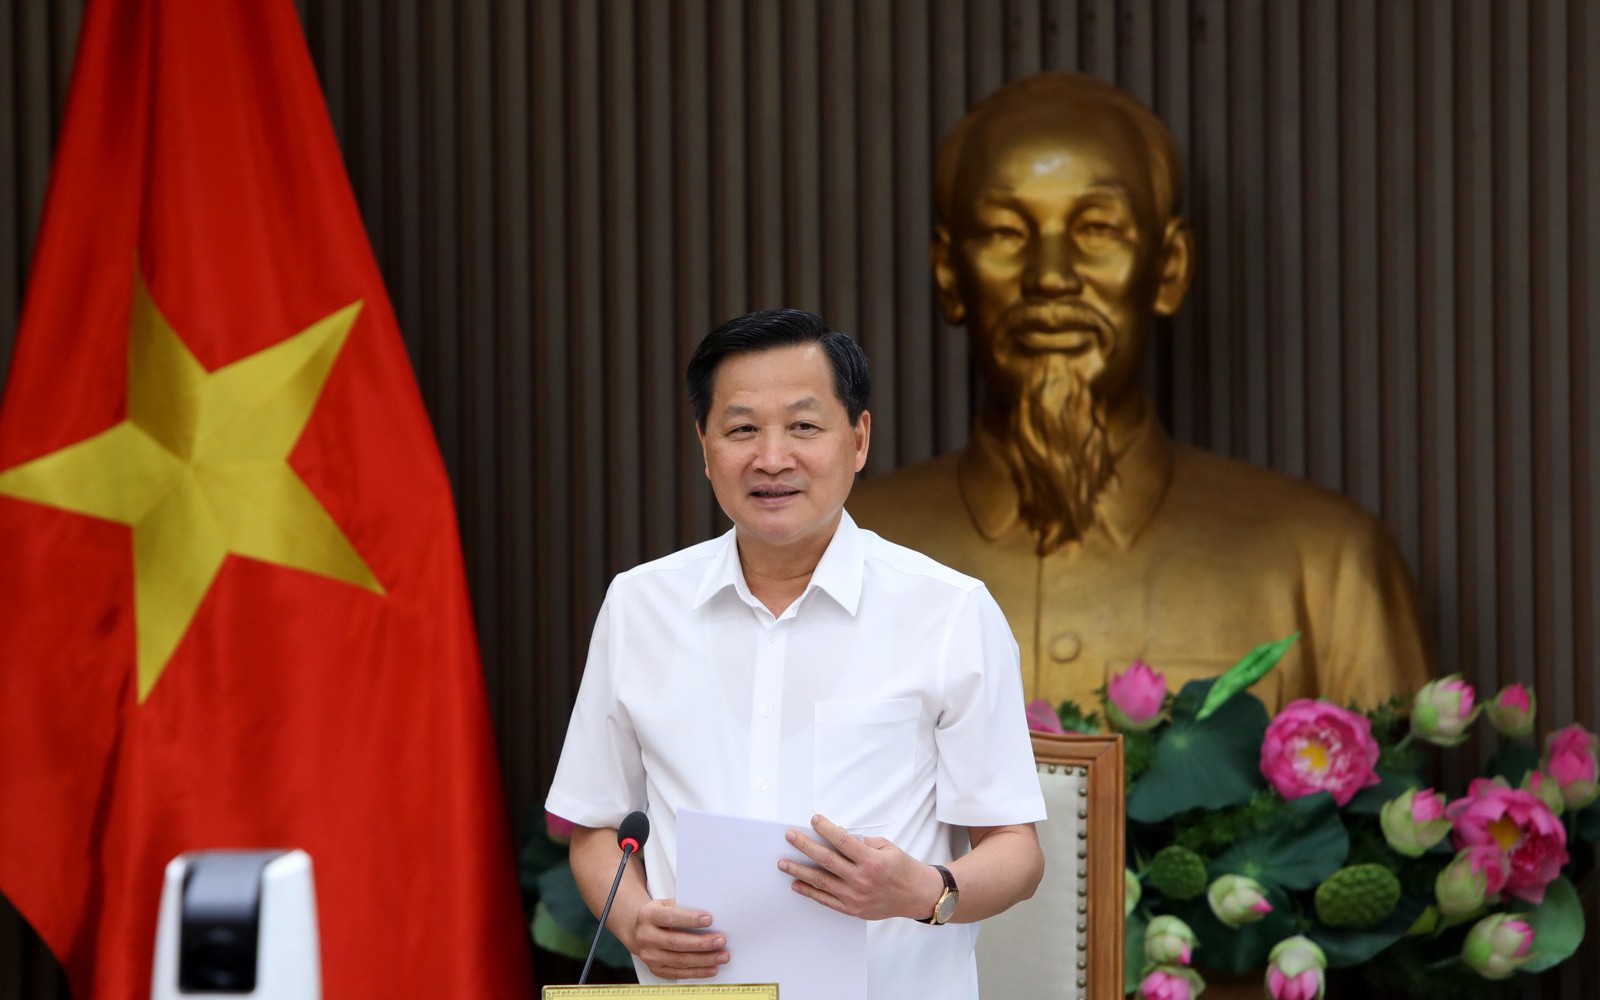 Phó Thủ tướng Lê Minh Khái: Đồng ý chủ trương bổ sung ngành điện hóa, ủng hộ Vinachem tăng vốn điều lệ